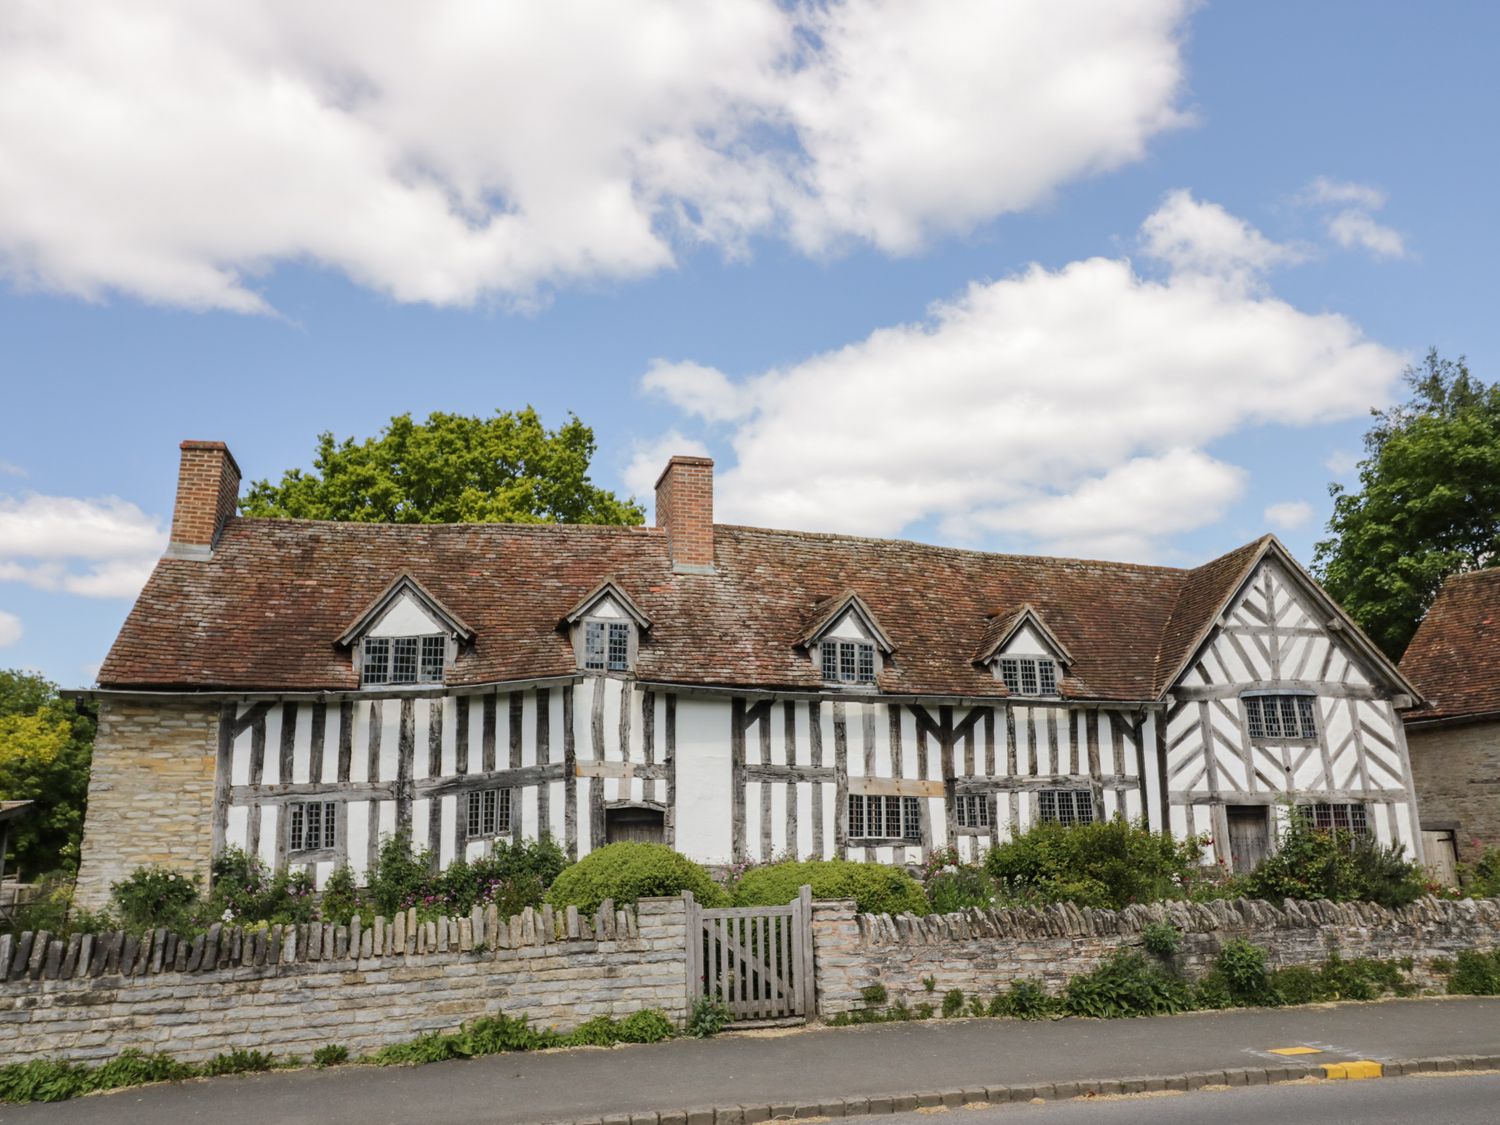 Cherry Blossom Cottage, Stratford-Upon-Avon